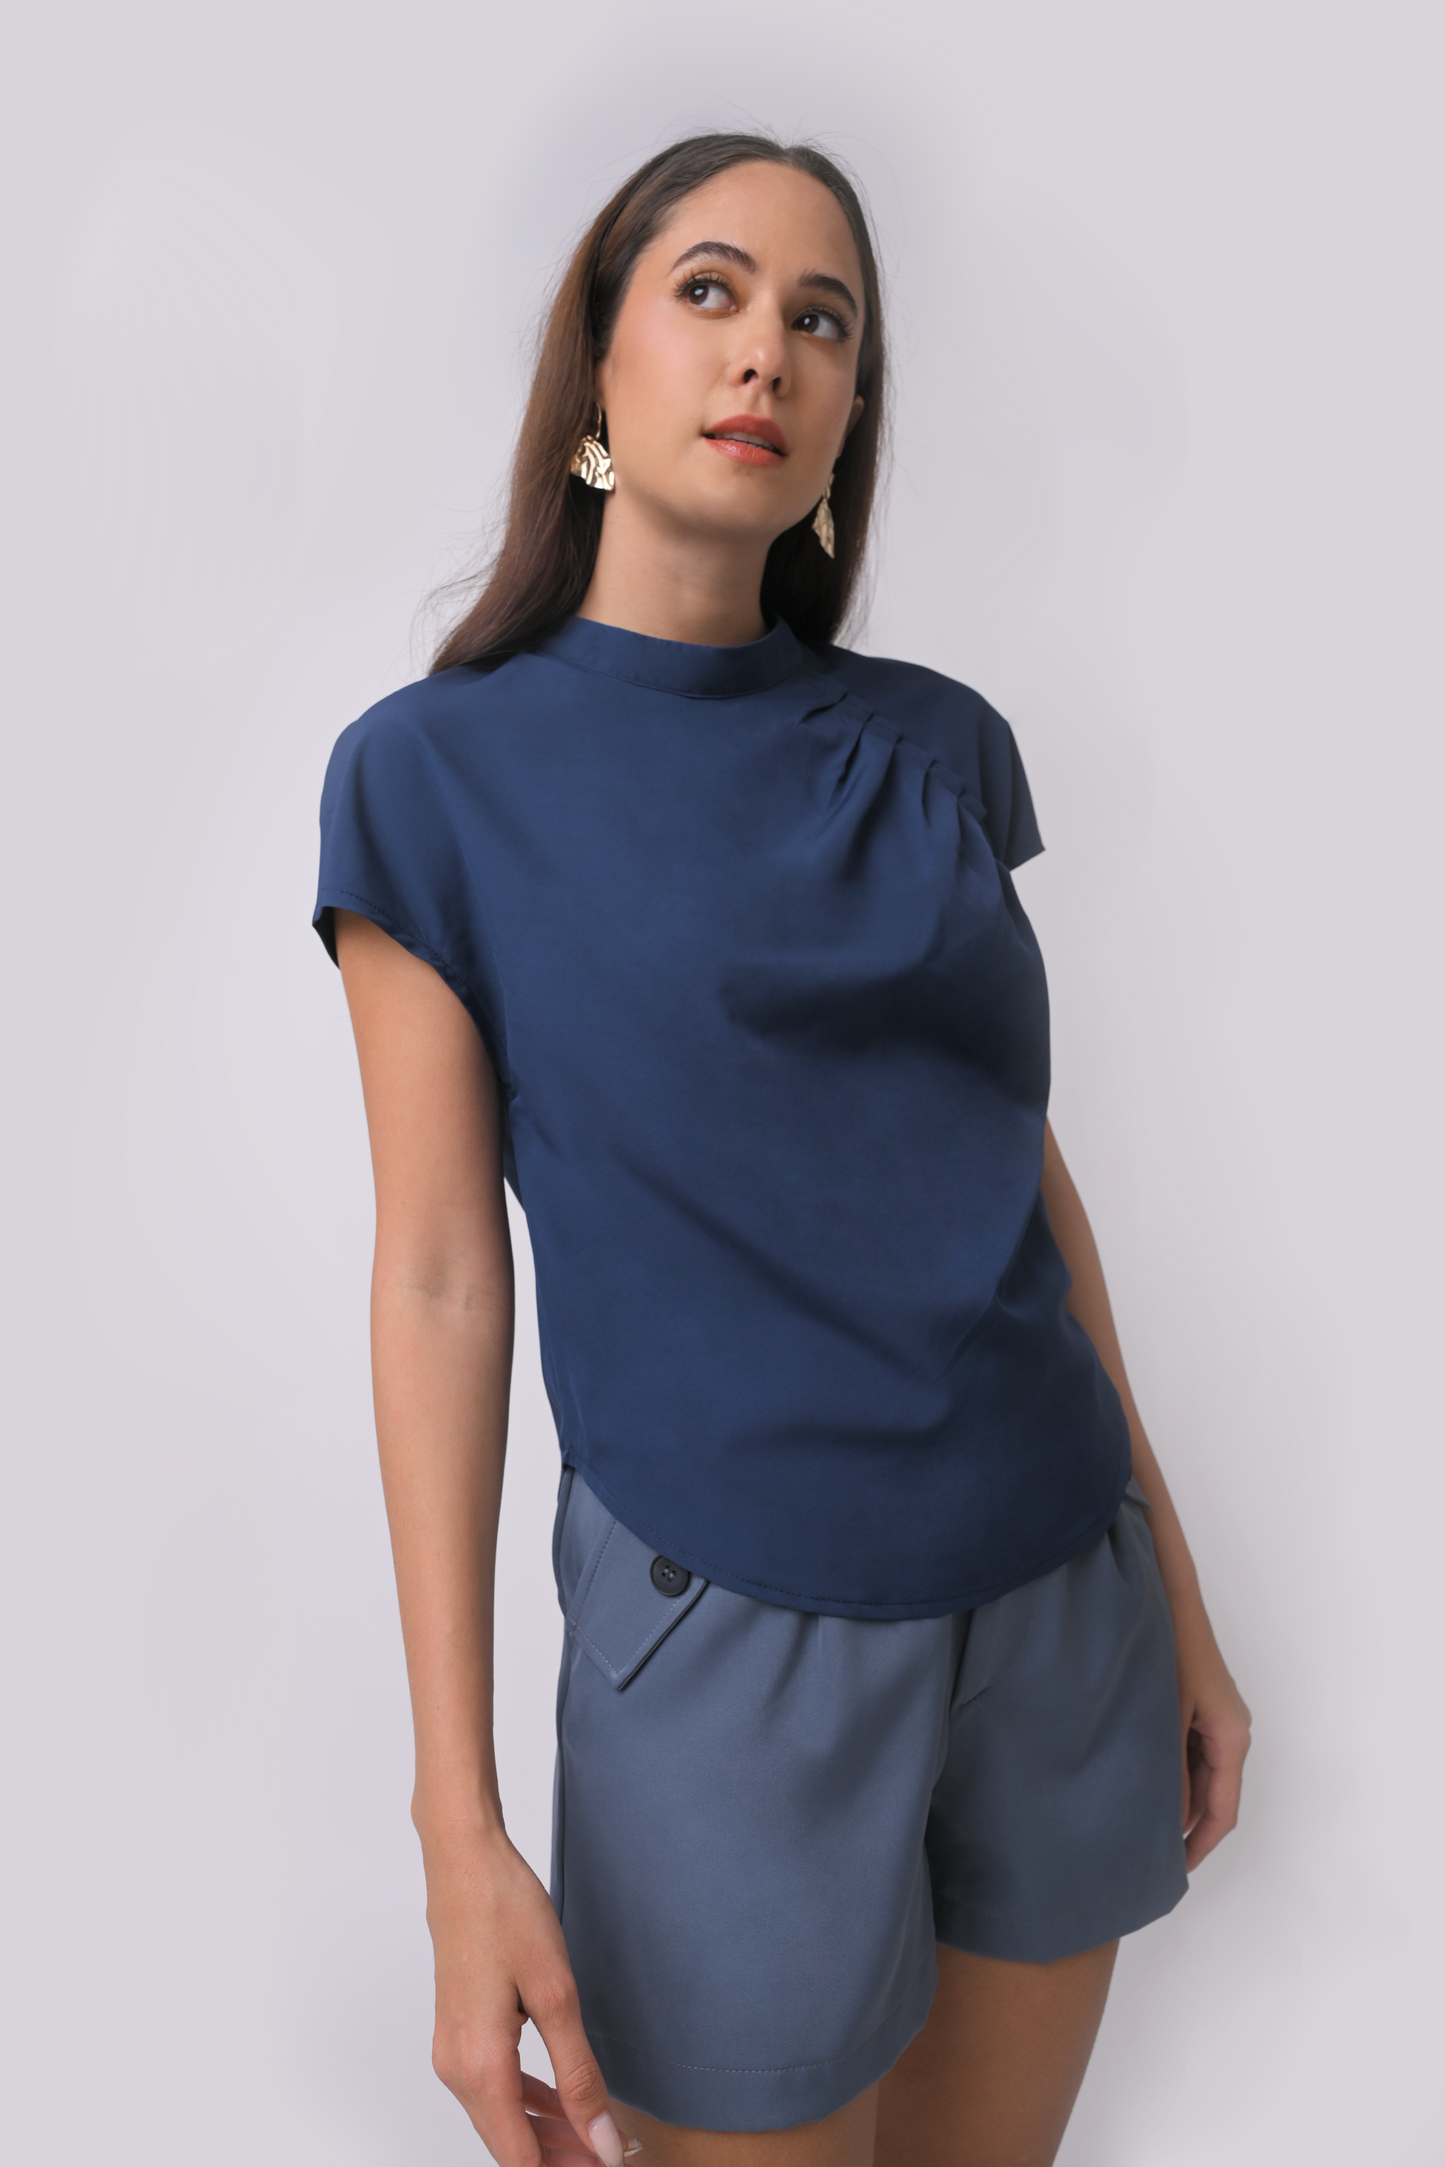 Alexa Short Sleeve Top (Navy Blue)